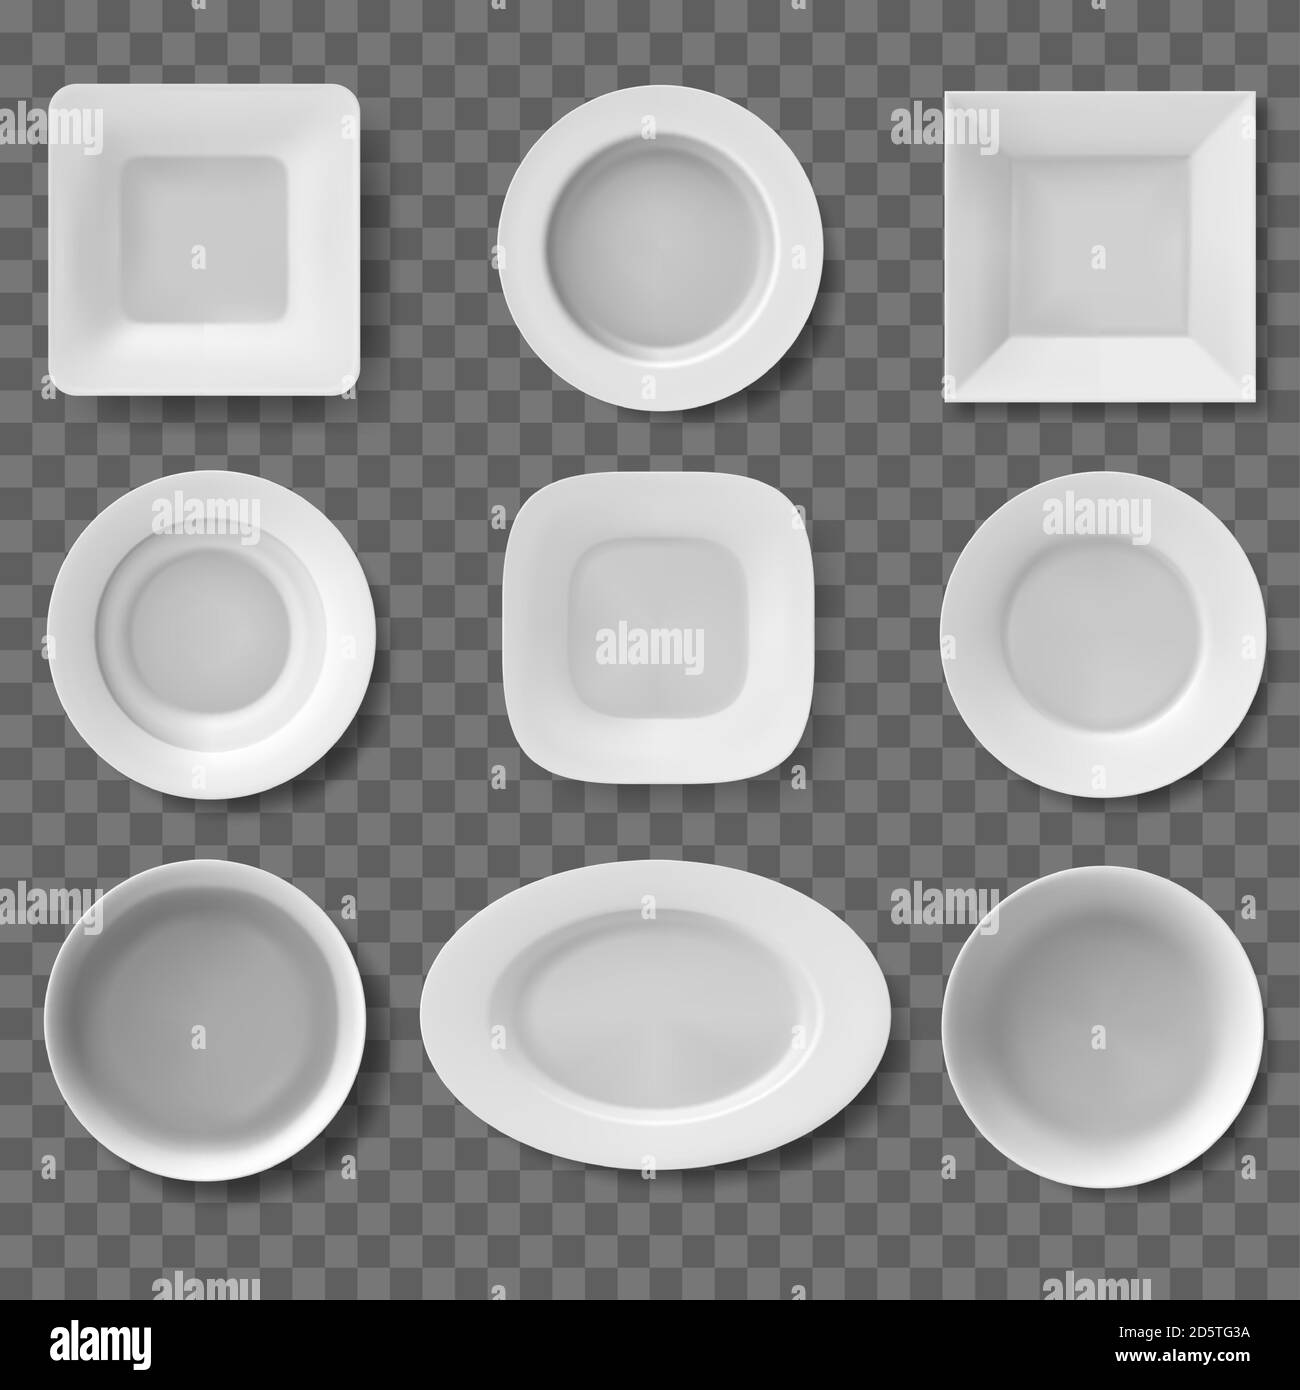 Realistische Platten. Essgeschirr, leere saubere Schüssel, Küchengeschirr, weiße Teller, Geschirr und Schüsseln. Restaurant 3d Geschirr Vektor Illustration Set Stock Vektor